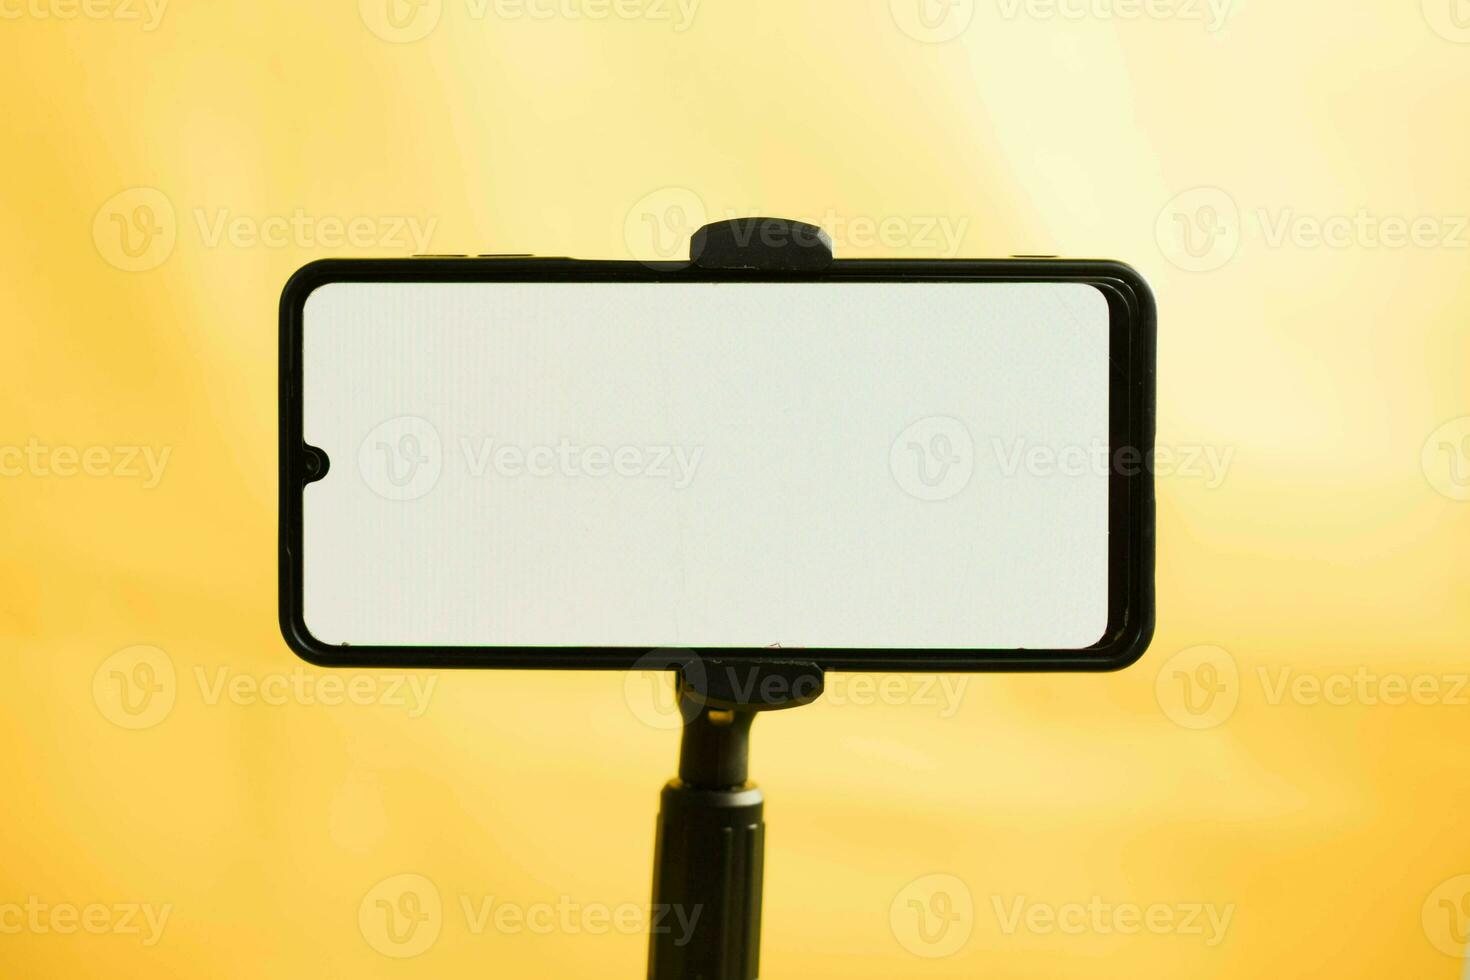 landskap telefon med vit skärm fast till stativ på gul bakgrund, för attrapp design. foto